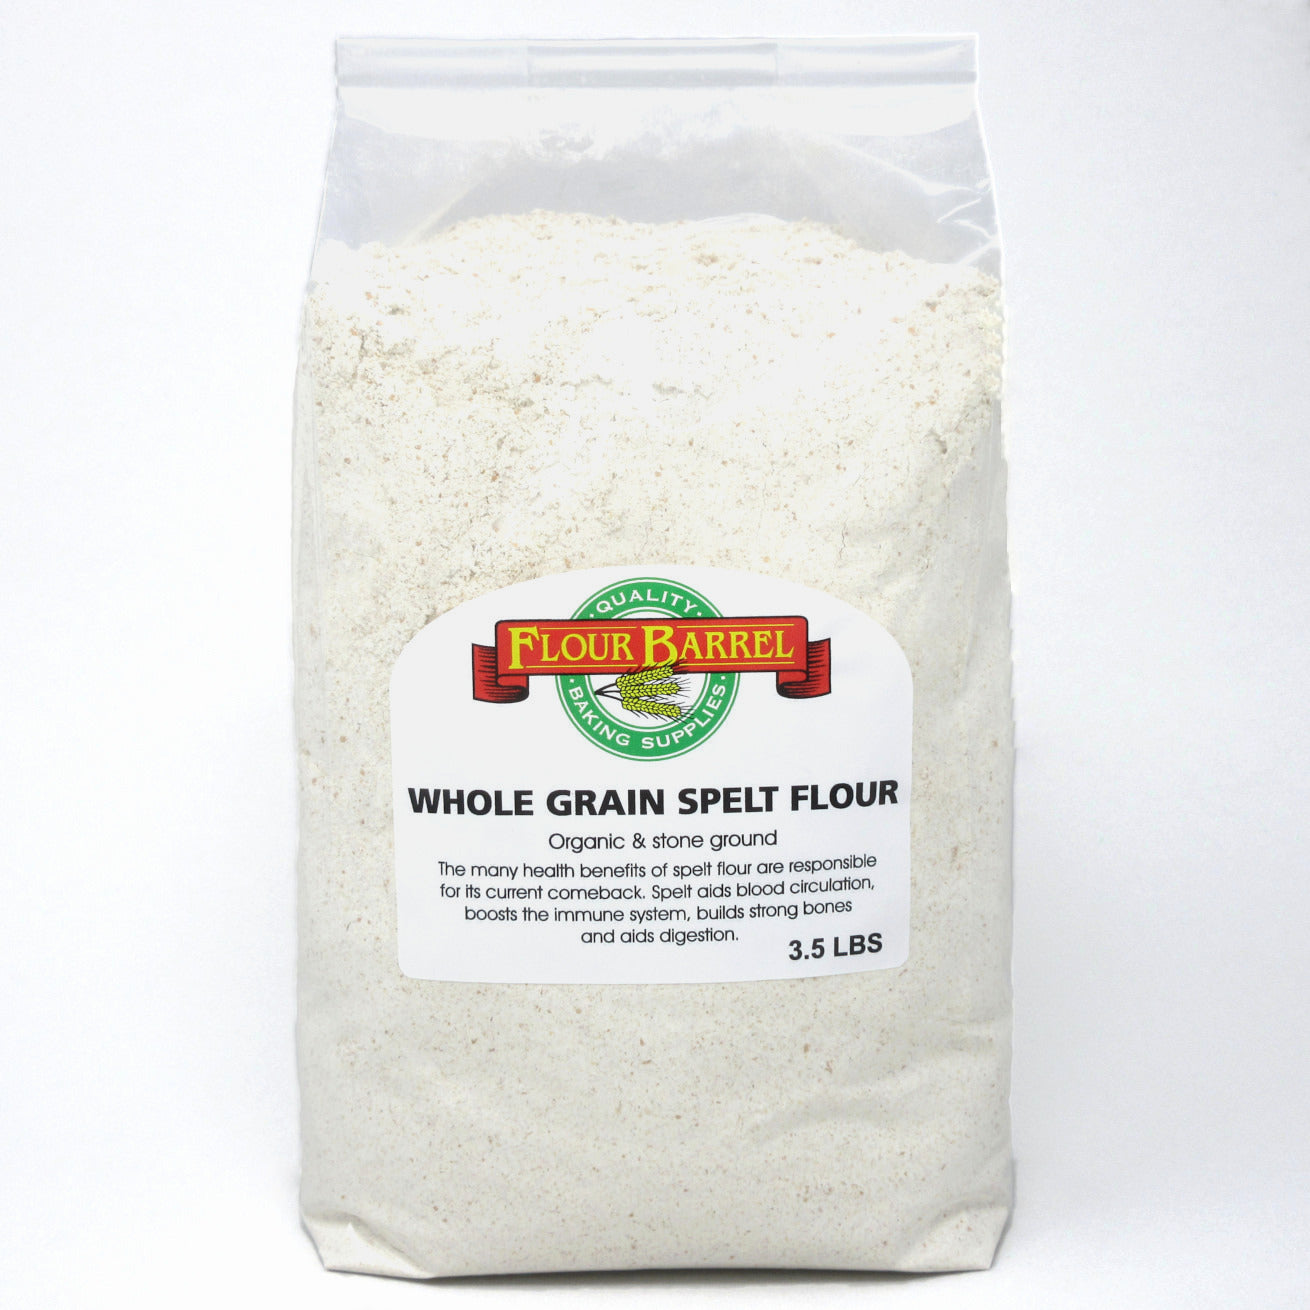 Flour Barrel product image - Whole Grain Spelt Flour